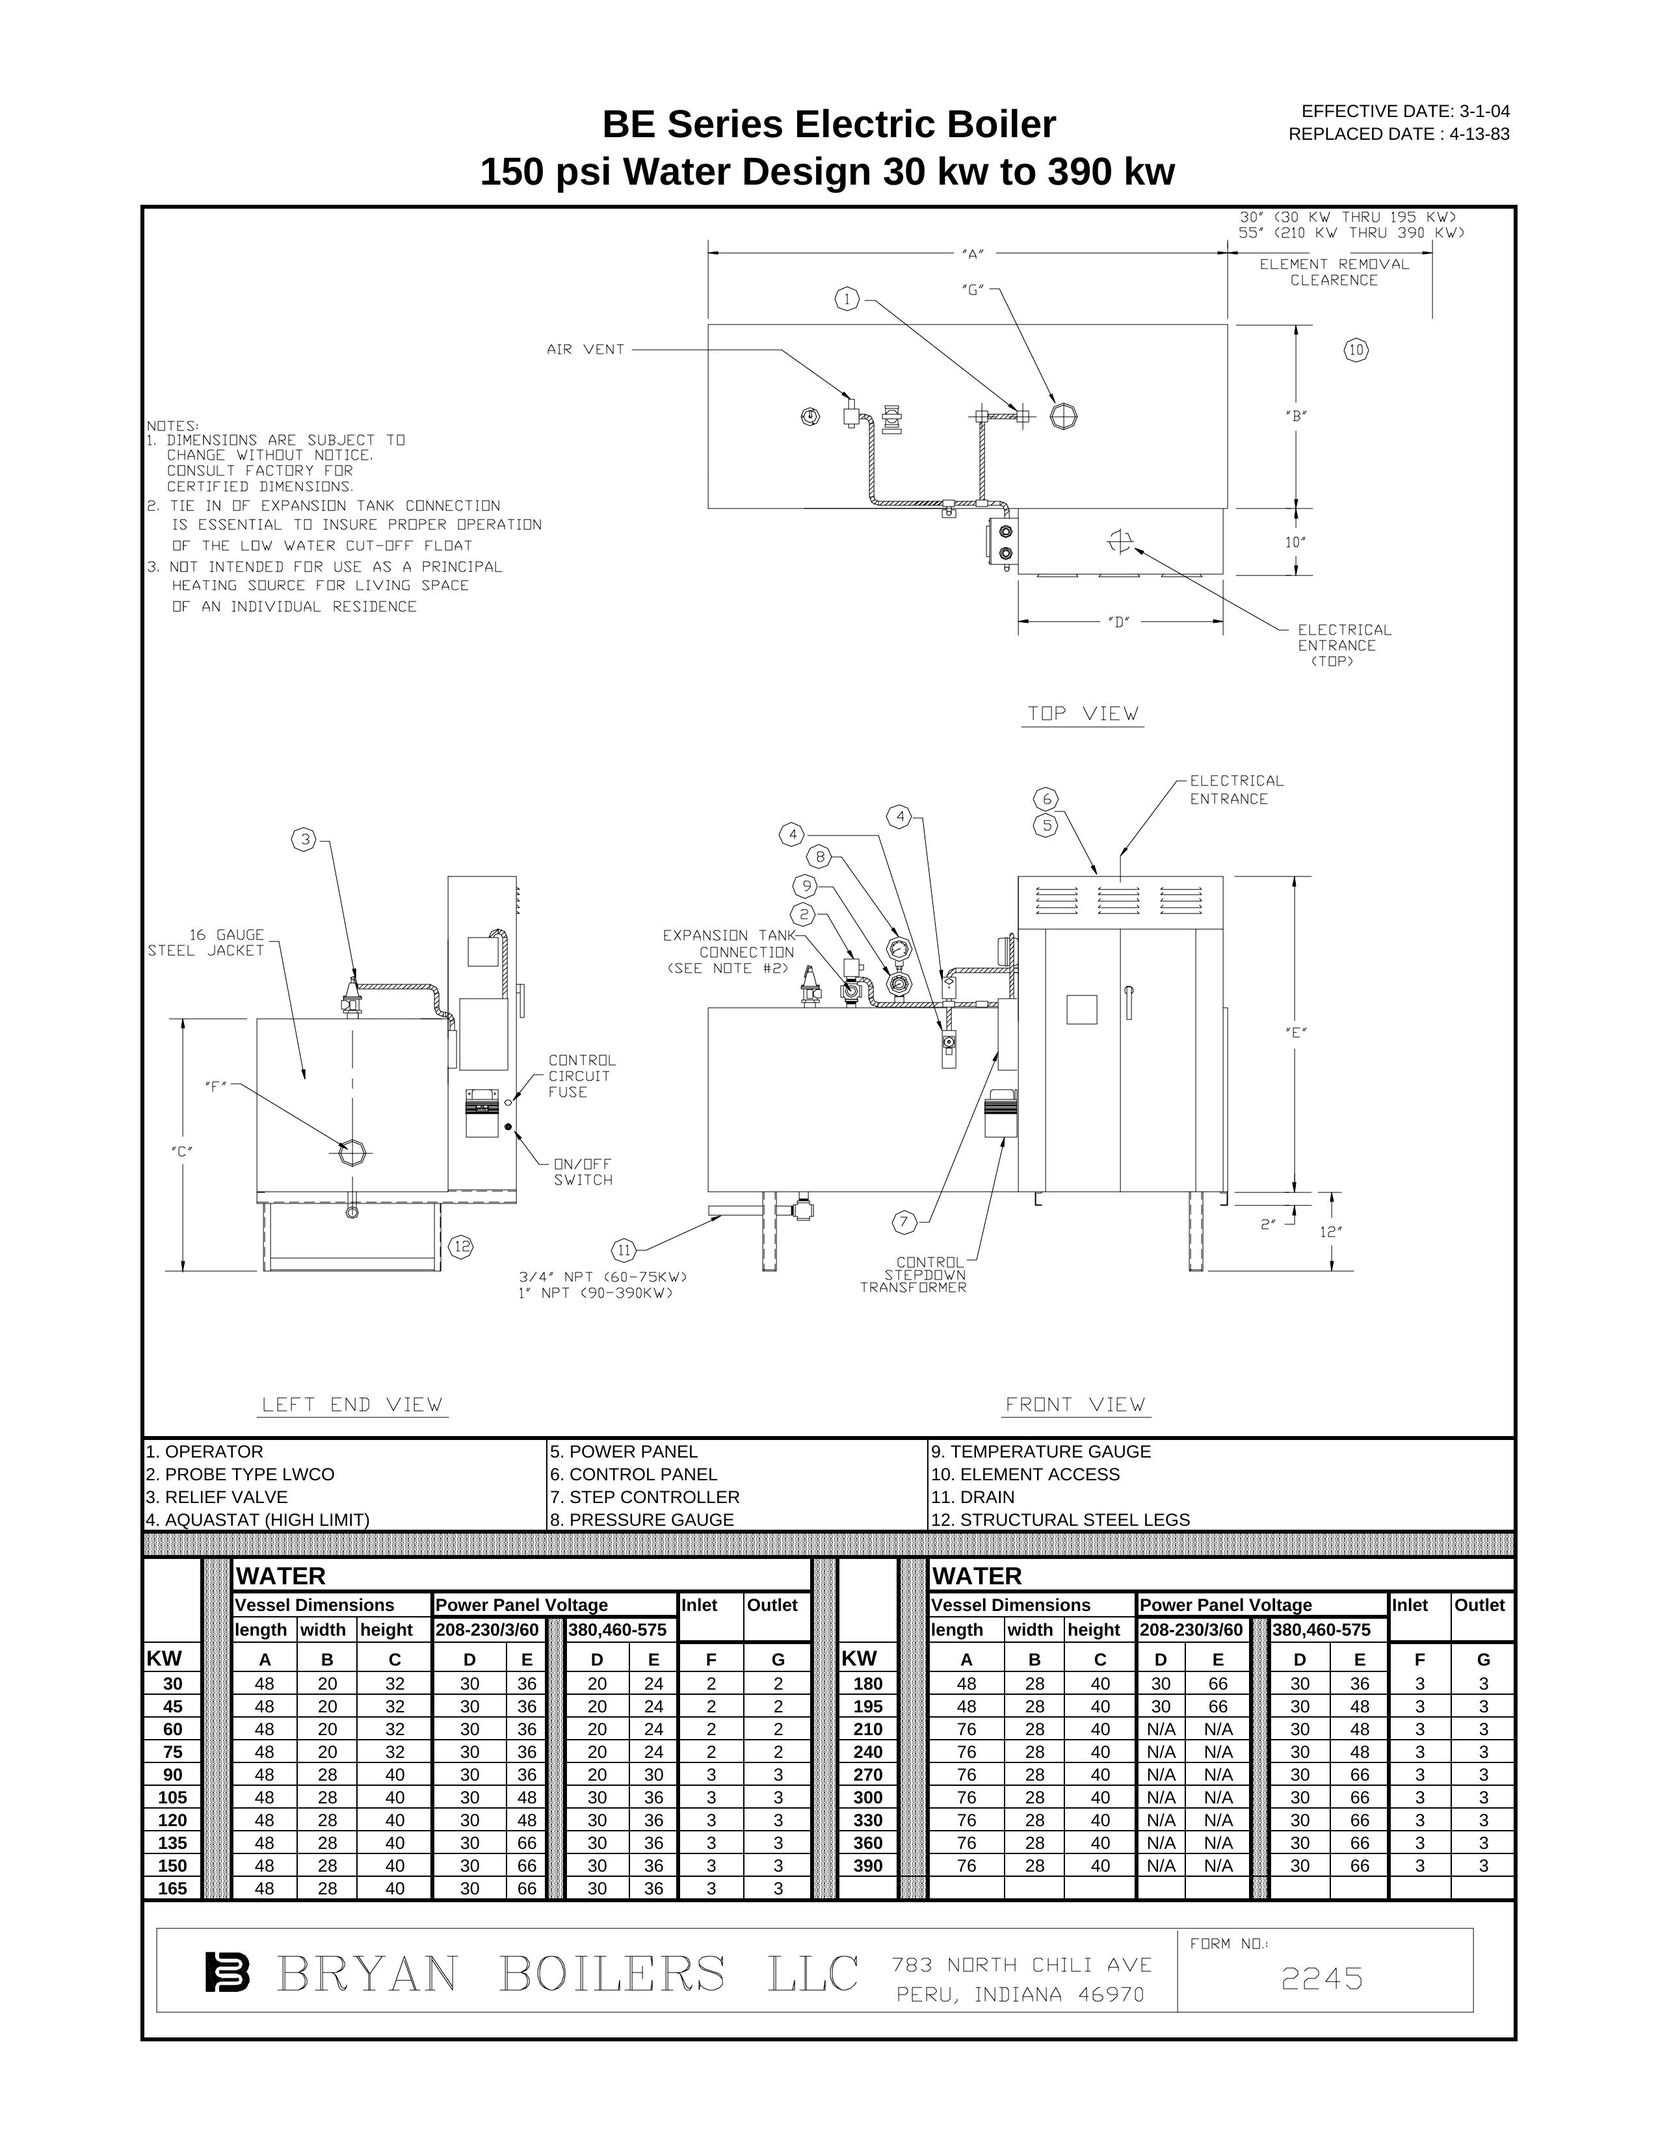 Bryan Boilers 150 psi Boiler User Manual